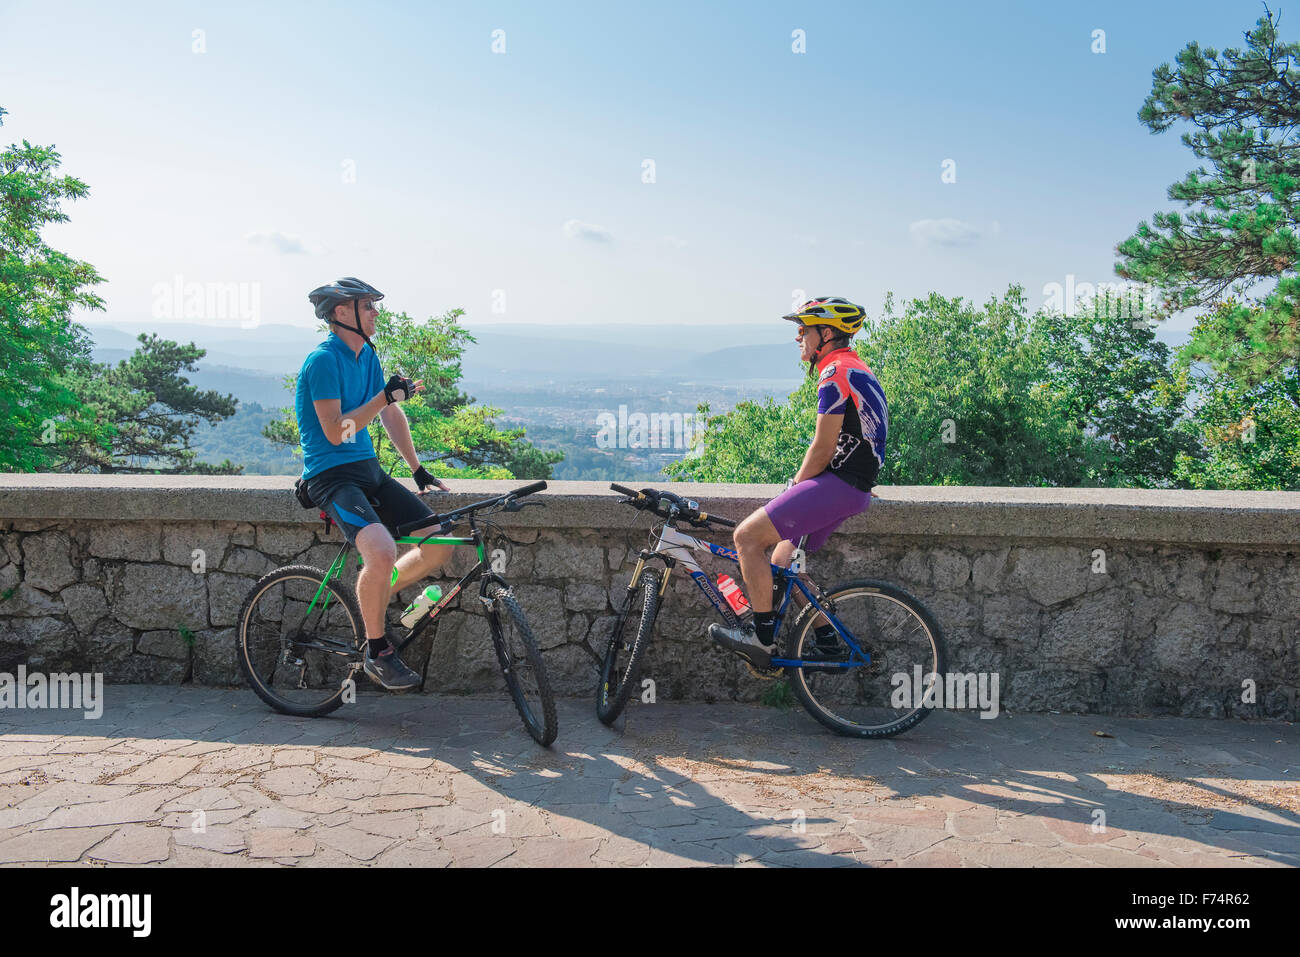 Sprechende Radfahrer, Blick auf zwei männliche Radfahrer, die sich auf einer Straße mit Blick auf die Adria westlich von Triest, Italien, ruhten. Stockfoto